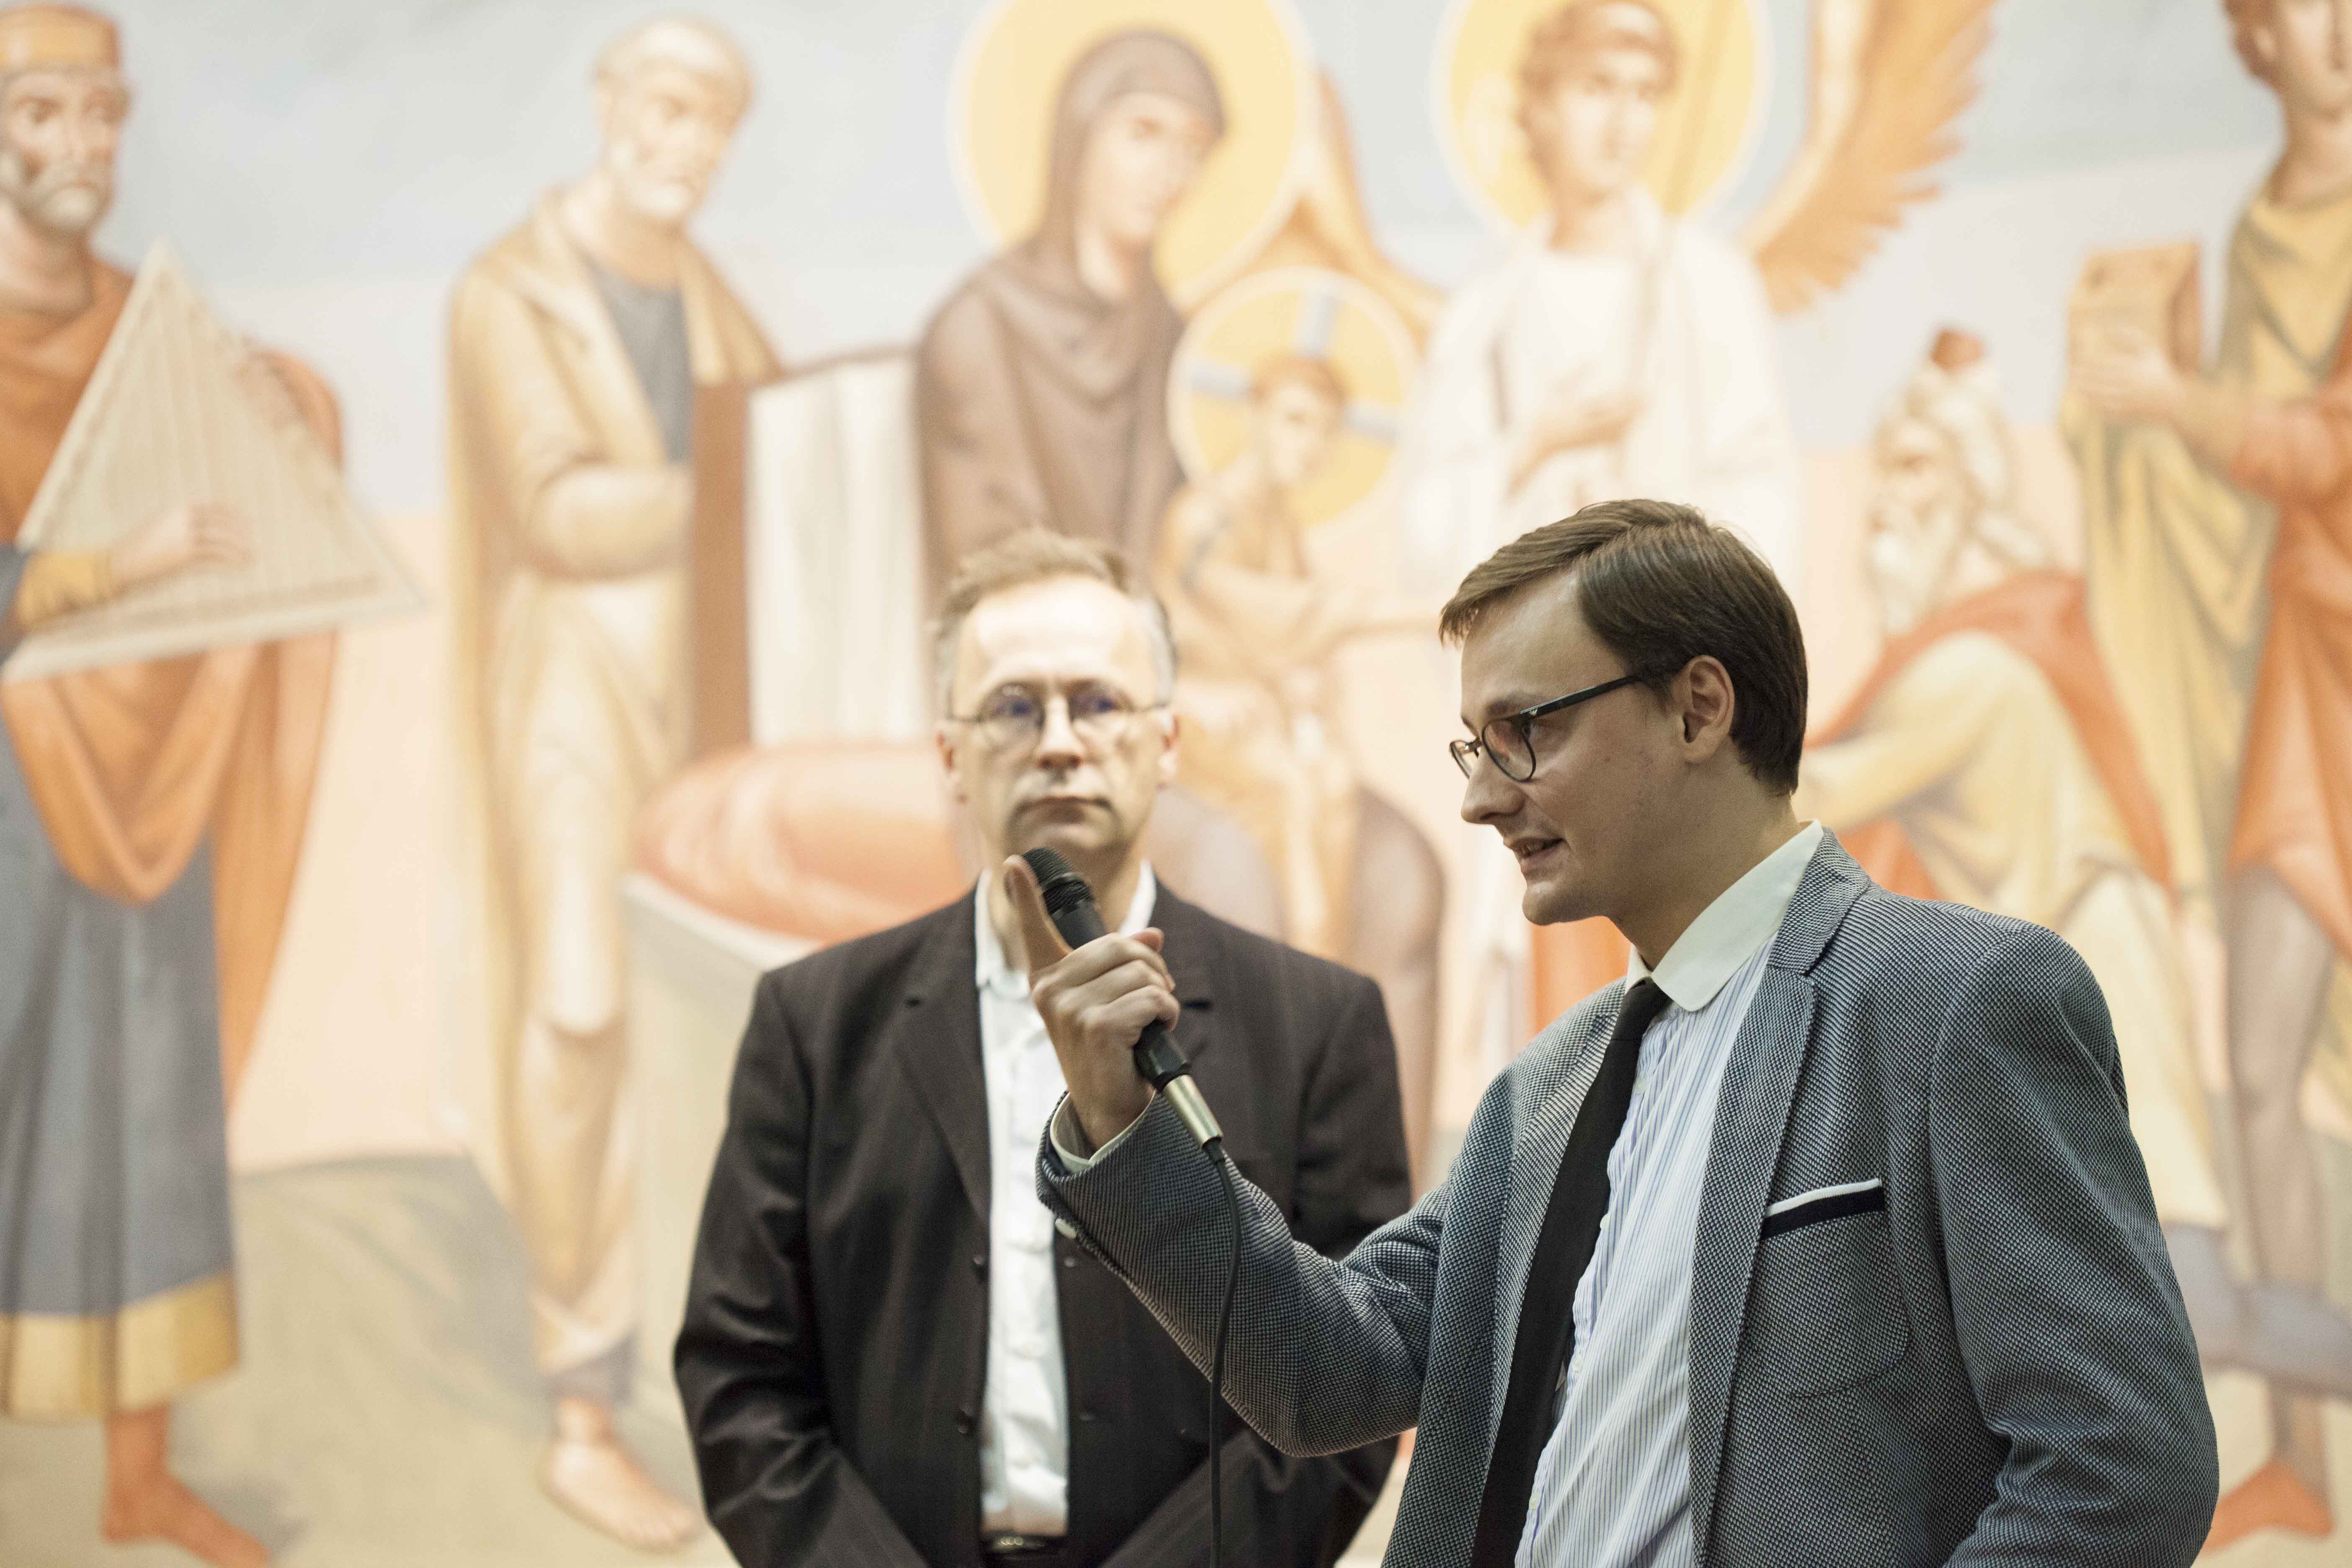 Богословско-философский семинар "Исповедь и речь: Лакан и Августин" прошел в  Феодоровском соборе